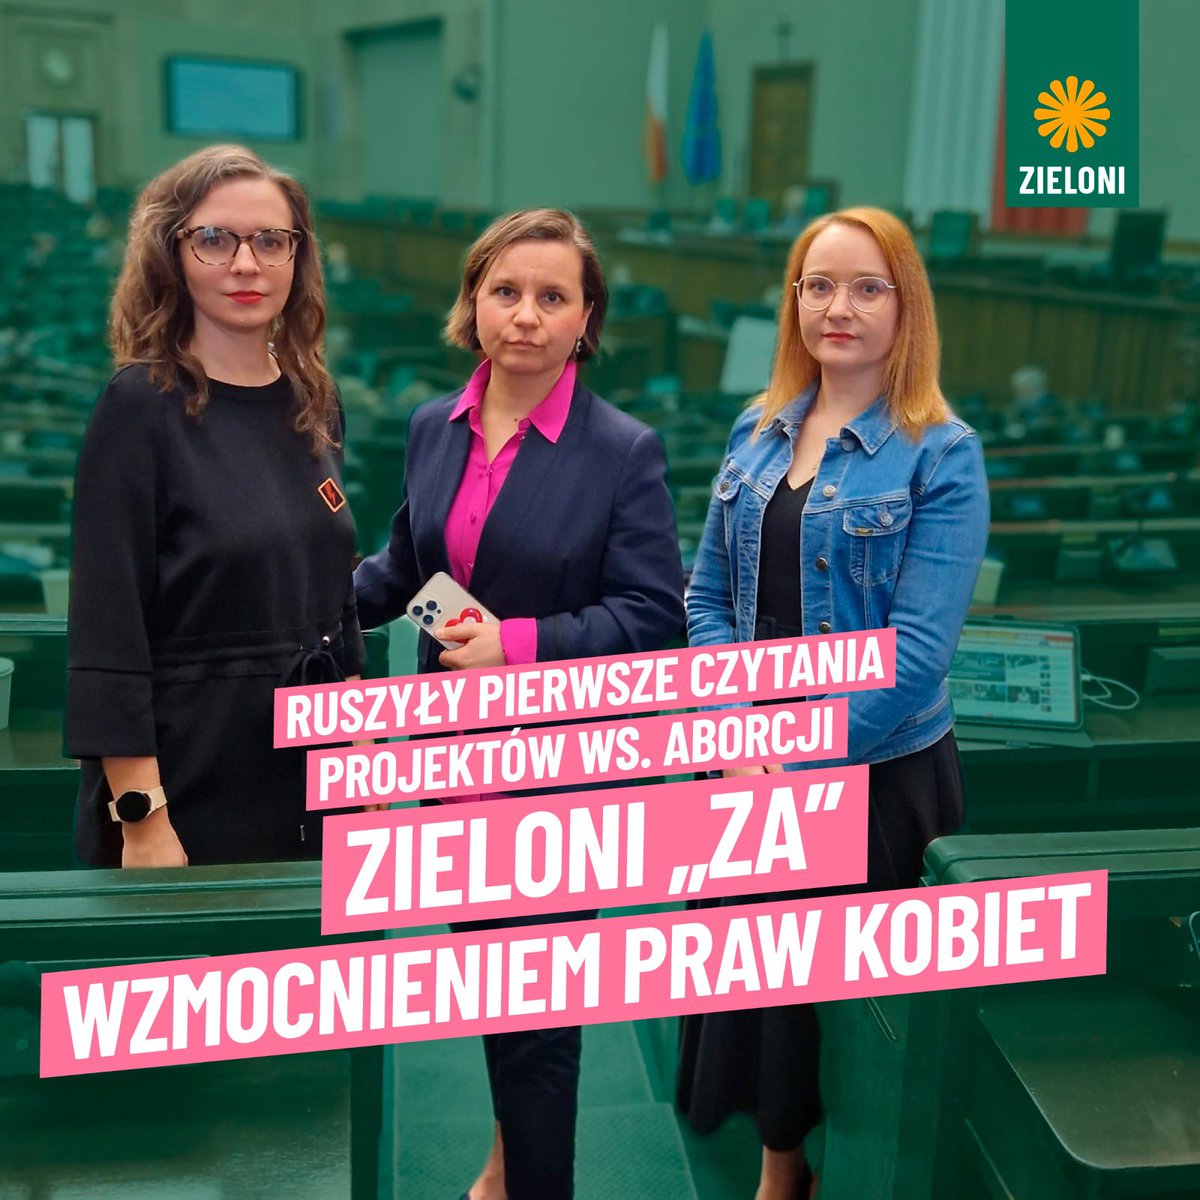 Zawsze staliśmy, stoimy i będziemy stali za prawami kobiet ✊ Legalna, dostępna i bezpieczna aborcja TERAZ! To nasza wielka odpowiedzialność wobec polskich kobiet. @JachiraKlaudia @GoTracz @Ula_Zielinska #Zieloni #zielone #sejm #aborcja #prawakobiet